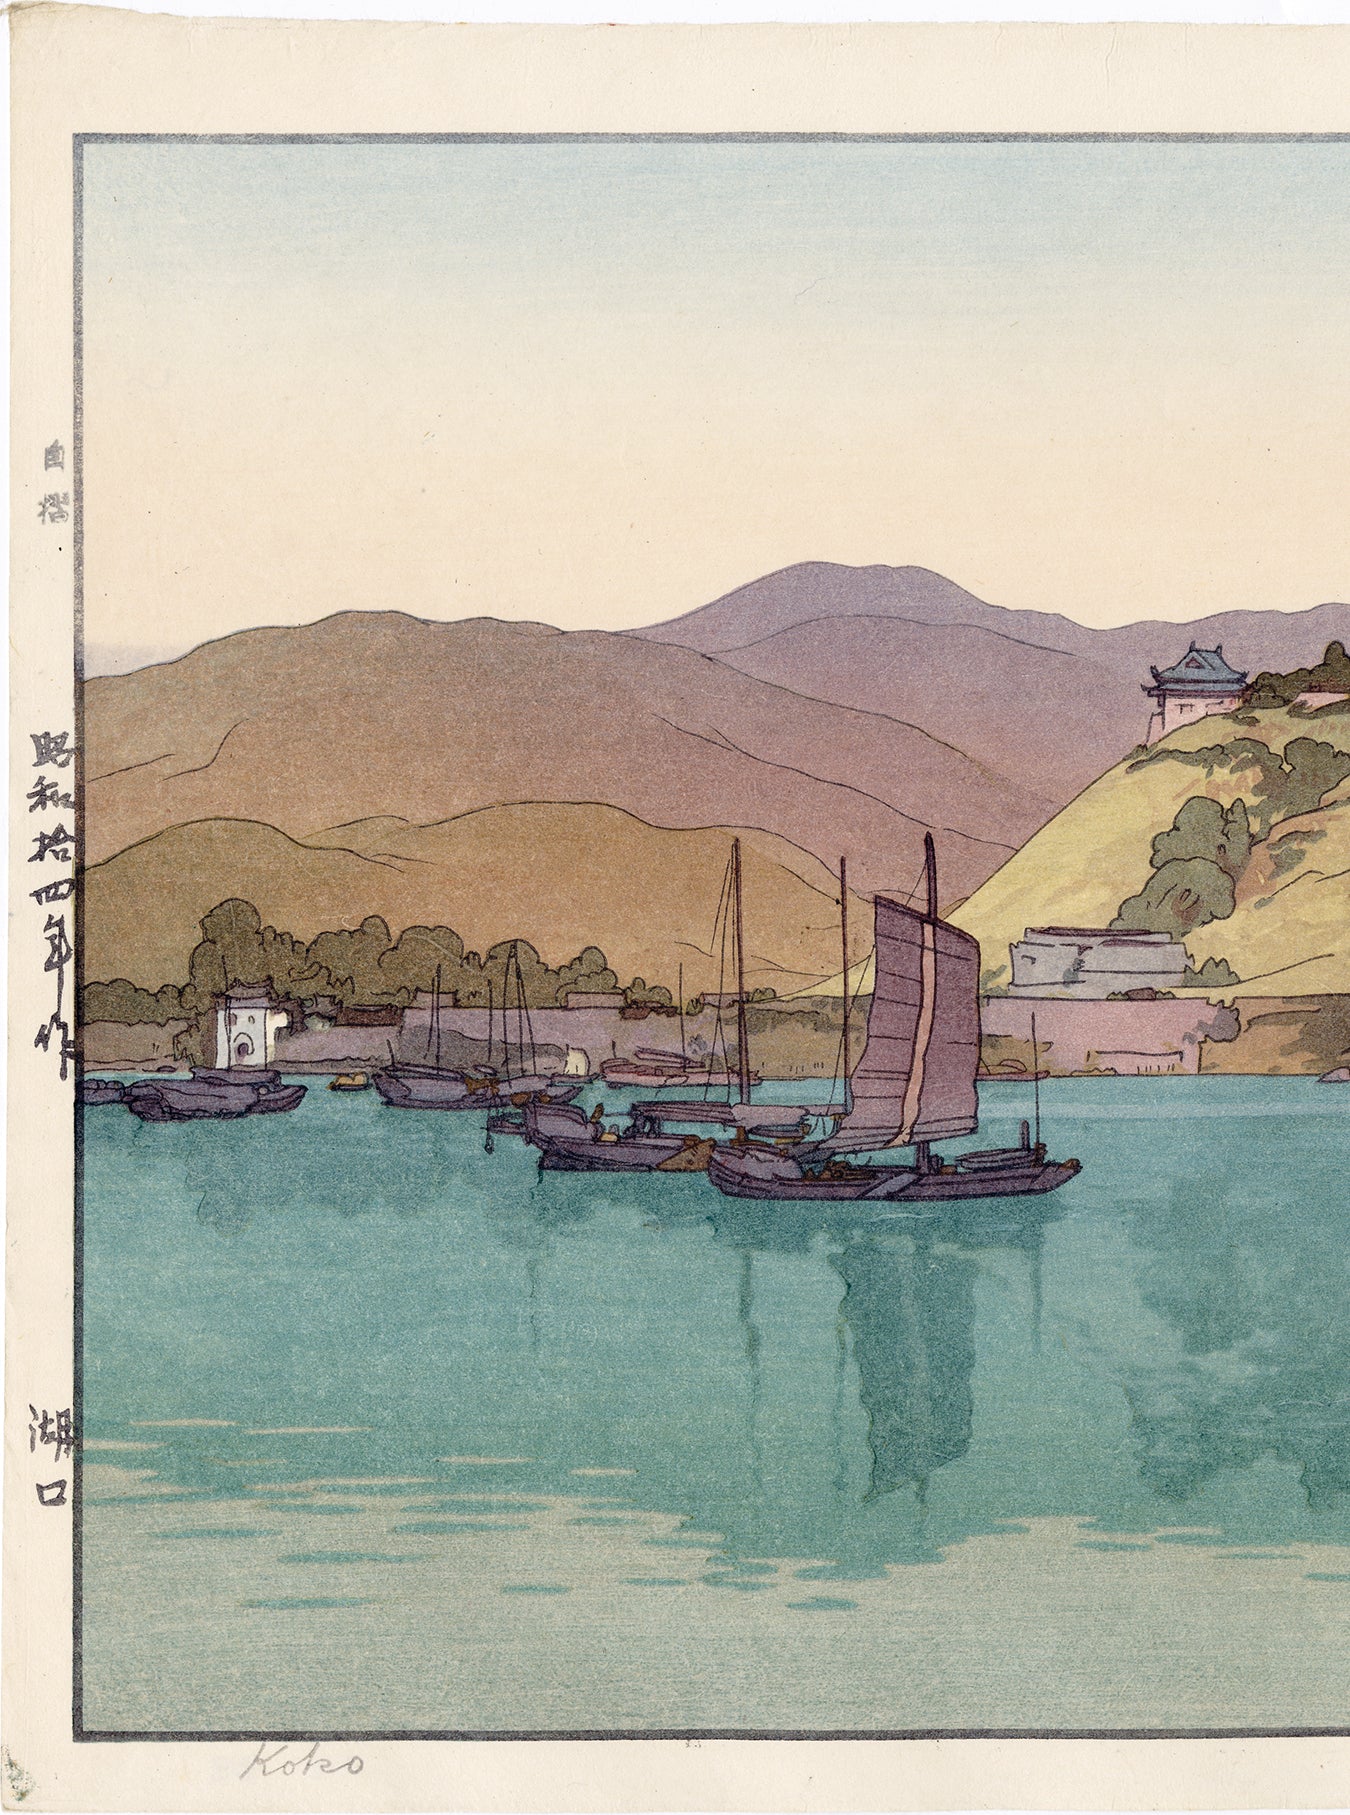 Yoshida Hiroshi 吉田博: Hukou, China Koko 湖口 Sold – Egenolf